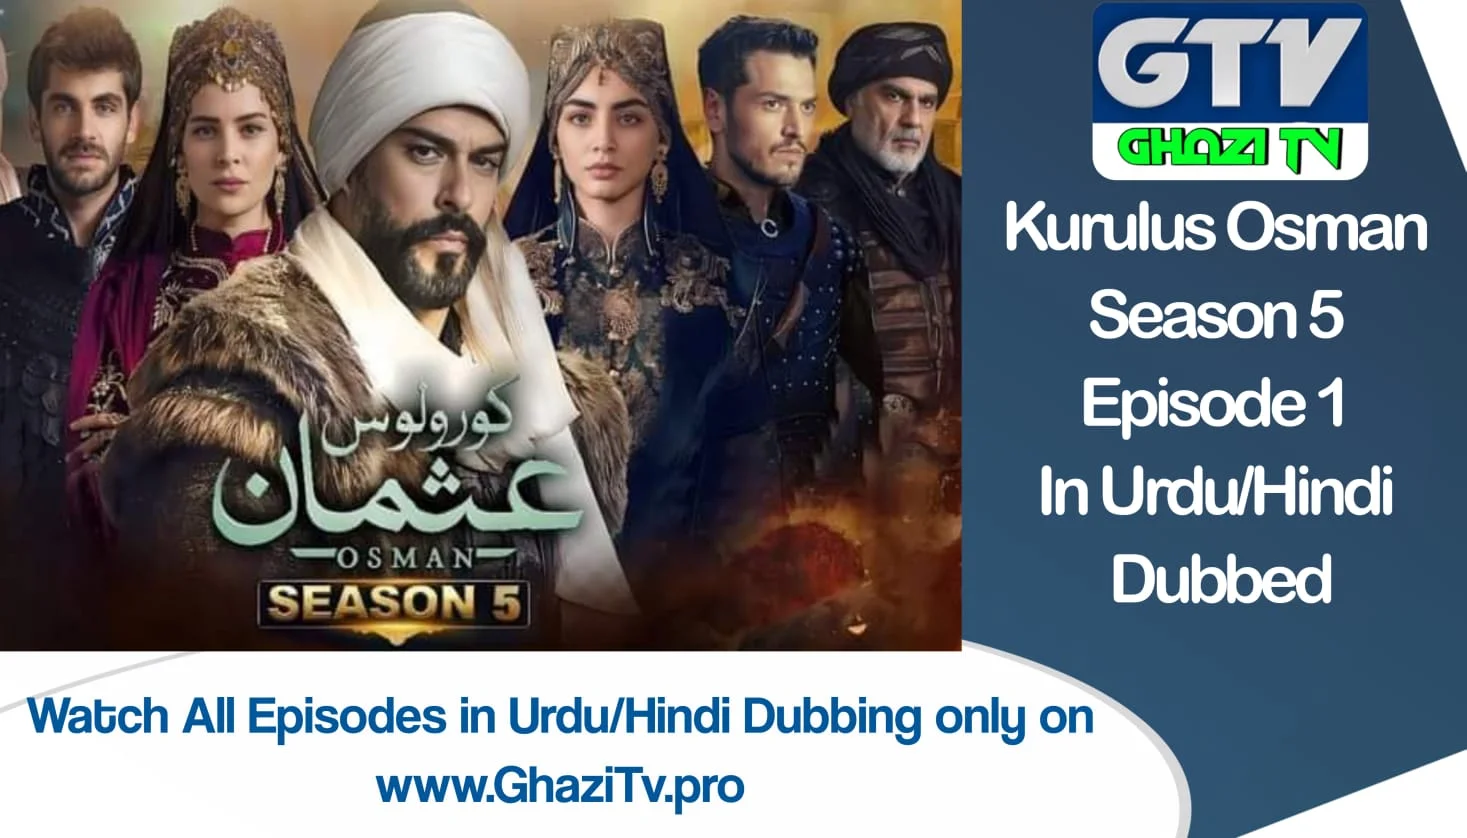 Kurulus Osman Season 5 Episode 1 in Urdu/Hindi Dubbing